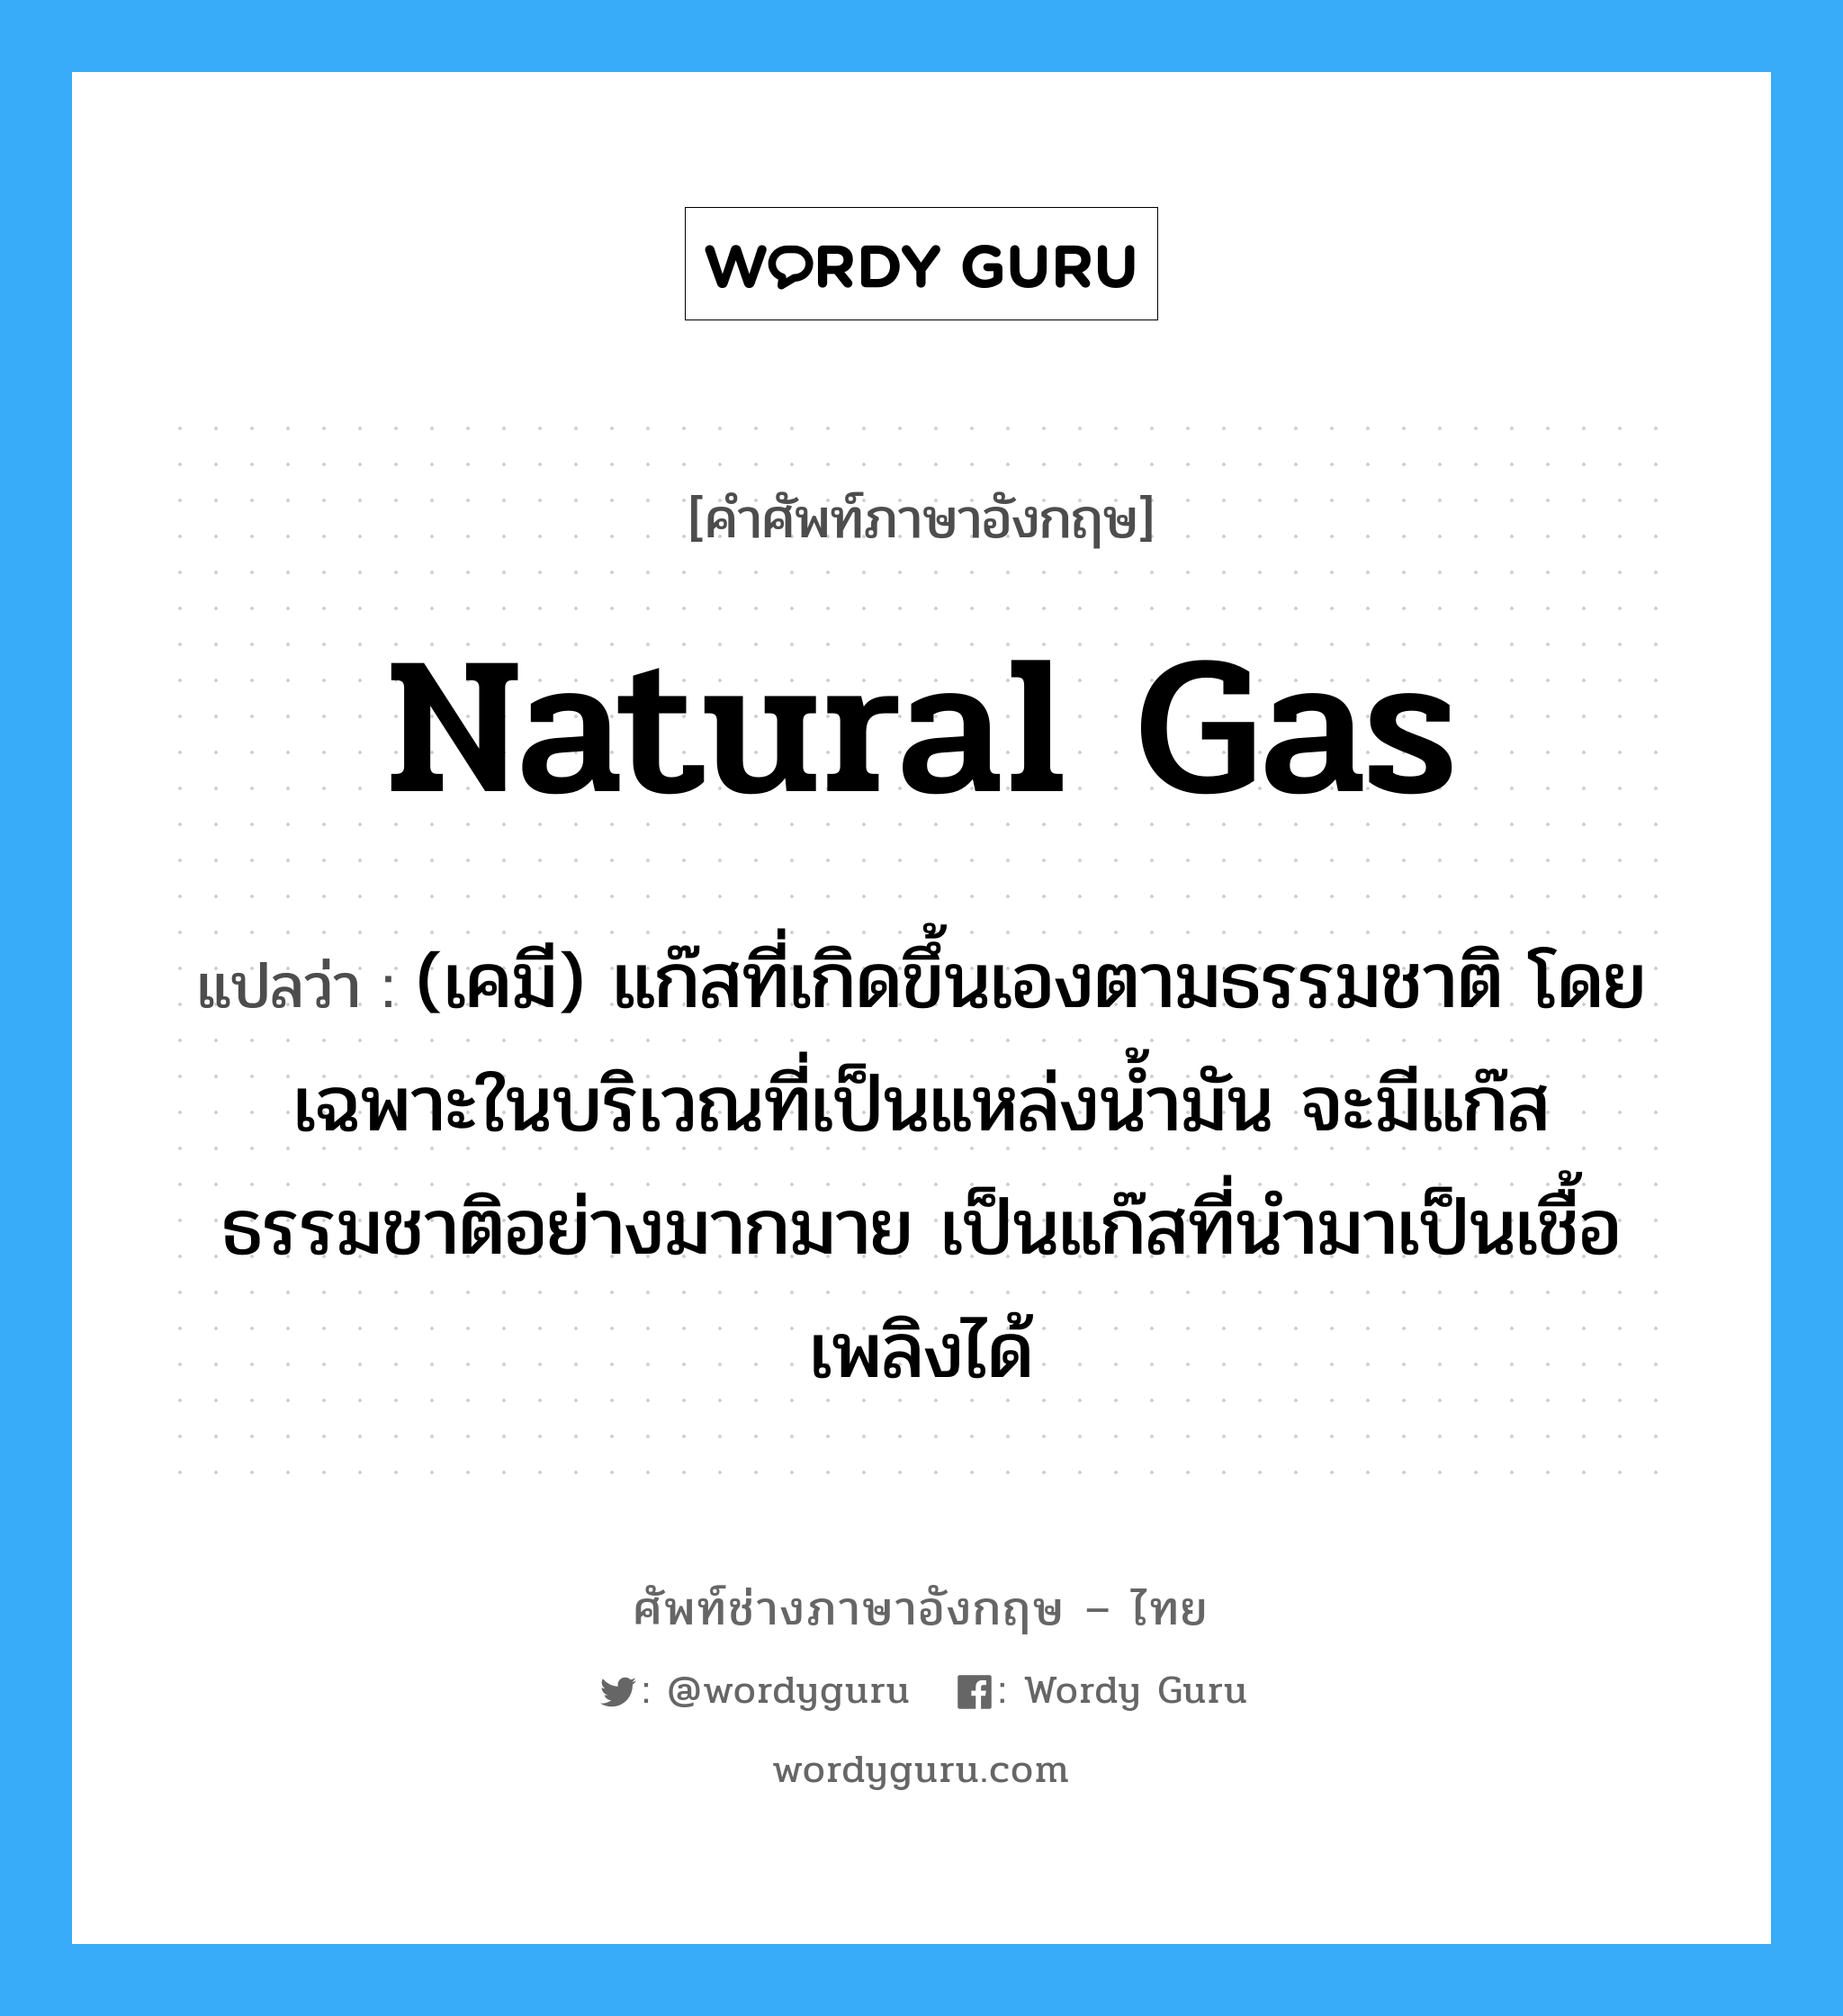 natural gas แปลว่า?, คำศัพท์ช่างภาษาอังกฤษ - ไทย natural gas คำศัพท์ภาษาอังกฤษ natural gas แปลว่า (เคมี) แก๊สที่เกิดขึ้นเองตามธรรมชาติ โดยเฉพาะในบริเวณที่เป็นแหล่งน้ำมัน จะมีแก๊สธรรมชาติอย่างมากมาย เป็นแก๊สที่นำมาเป็นเชื้อเพลิงได้